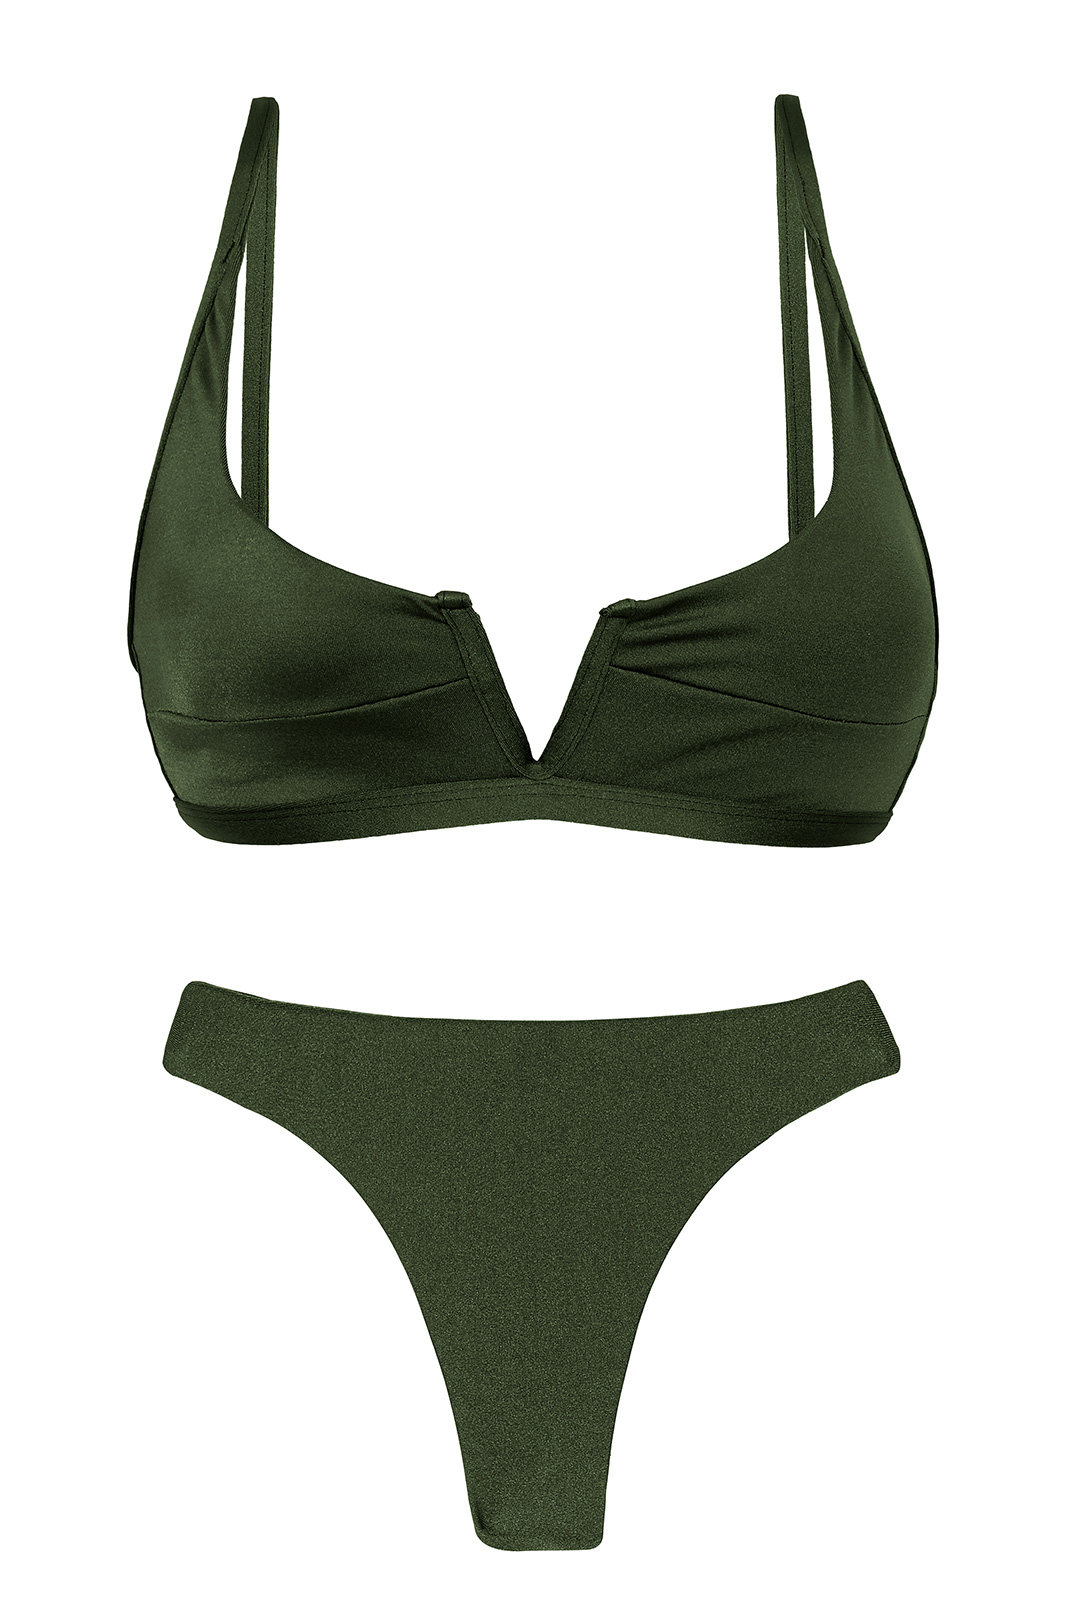 Iridescent Dark Green Thong Bikini With V Bralette Top -set Croco Bra-v ...